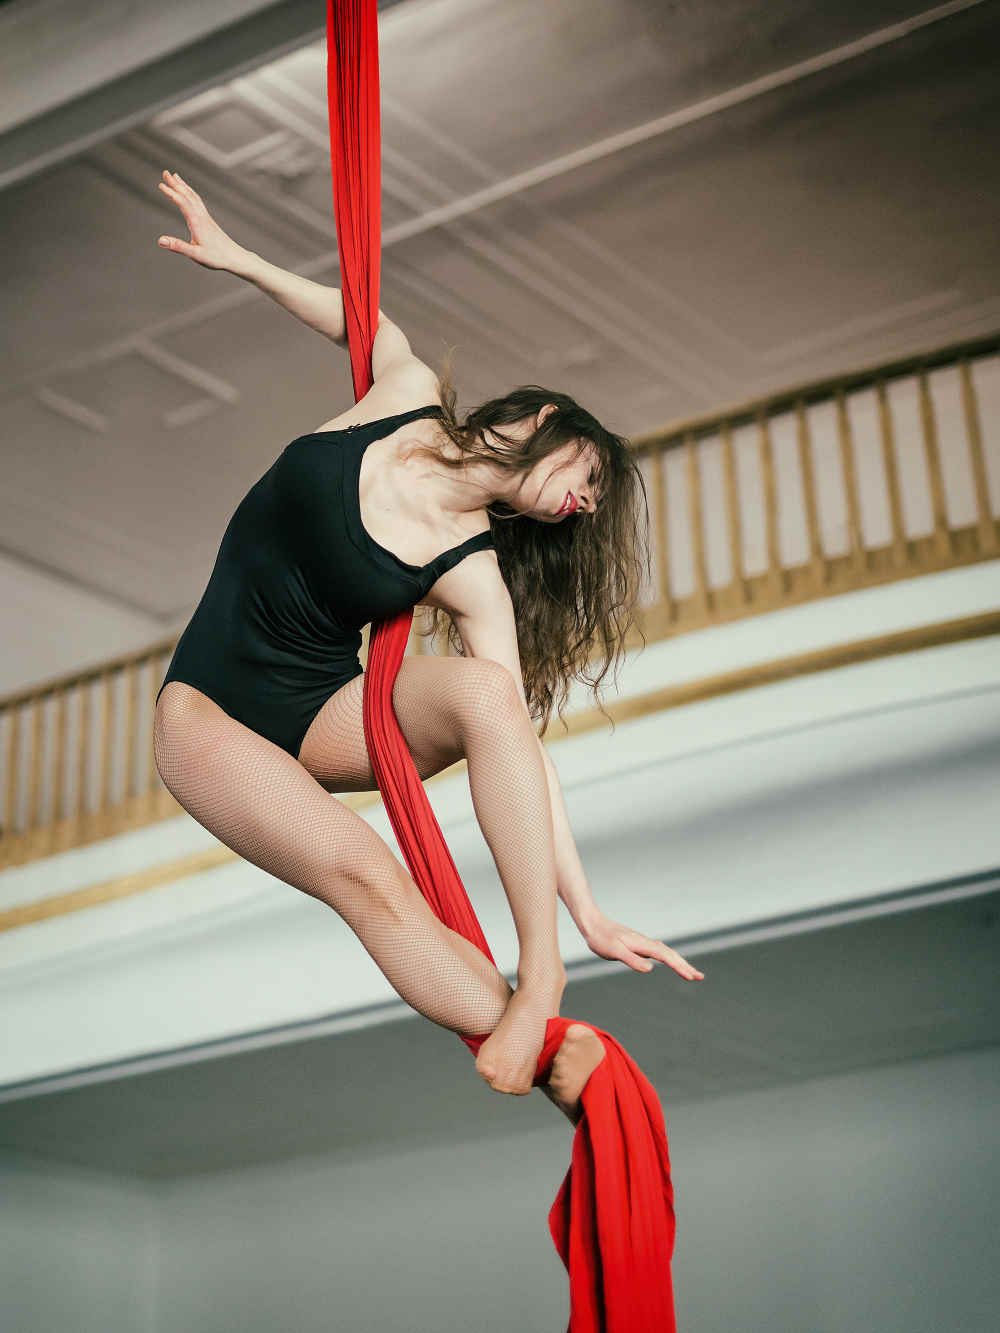 Elena-aerial-silks-dancing